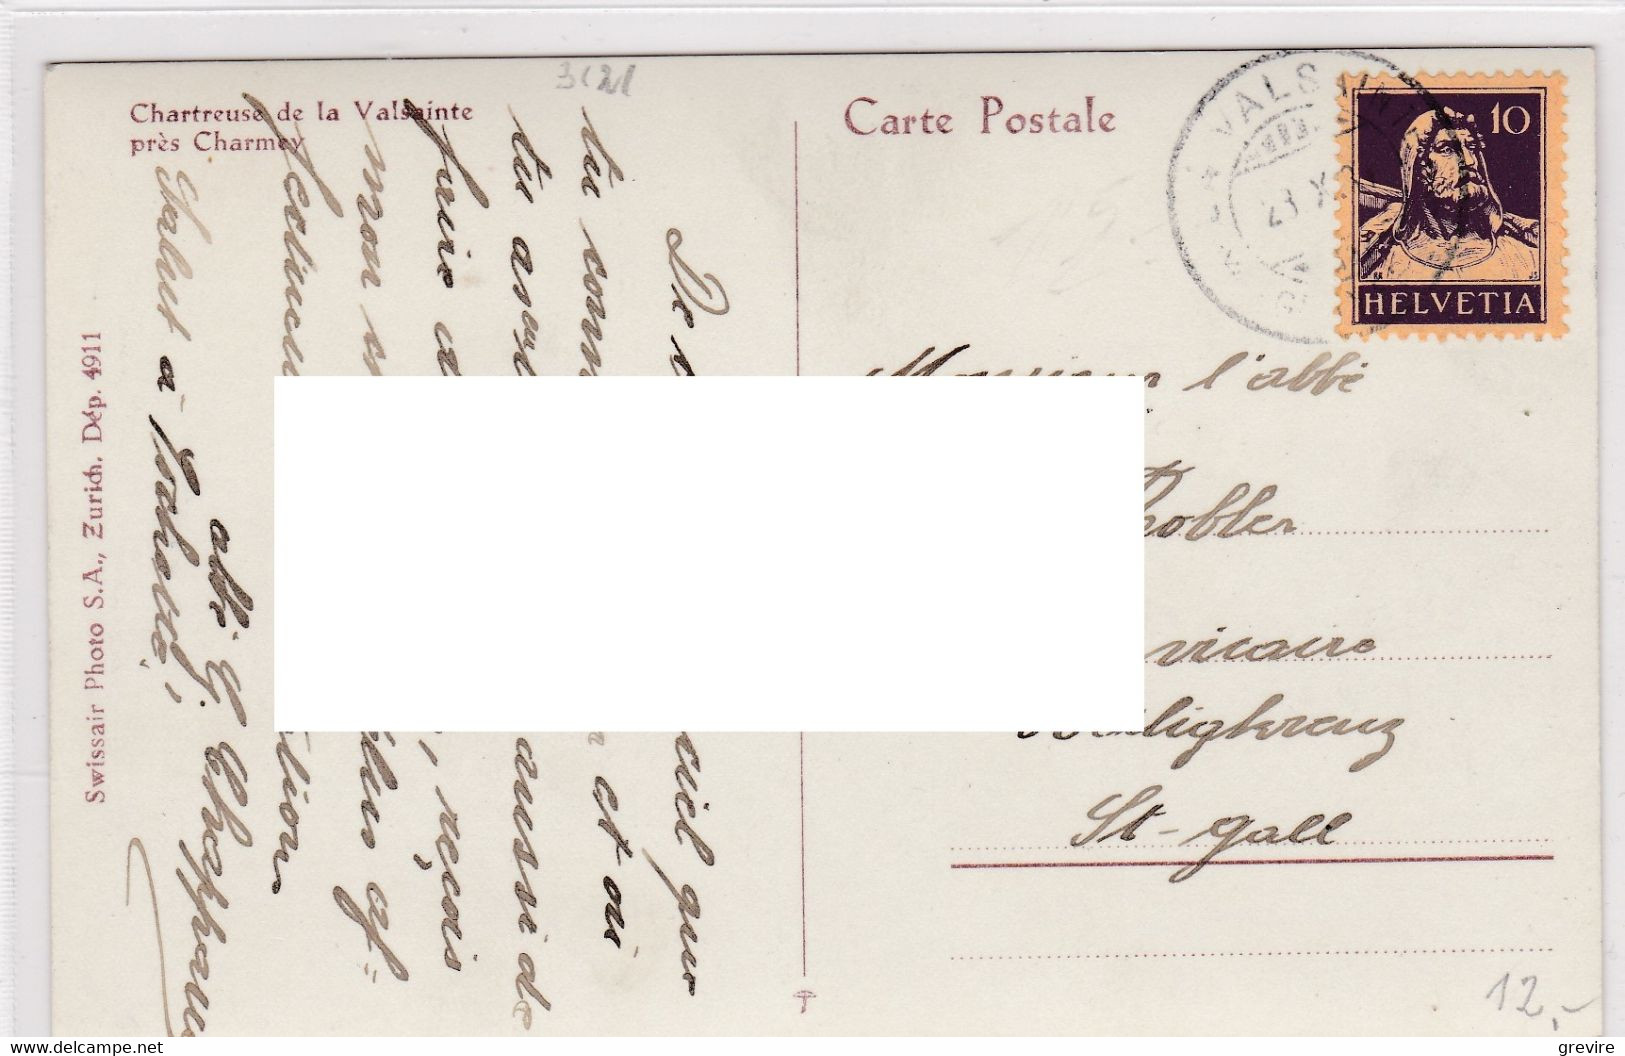 Cerniat, Chartreuse De La Valsainte. Carte Postale D'aviateur Circulée - Cerniat 